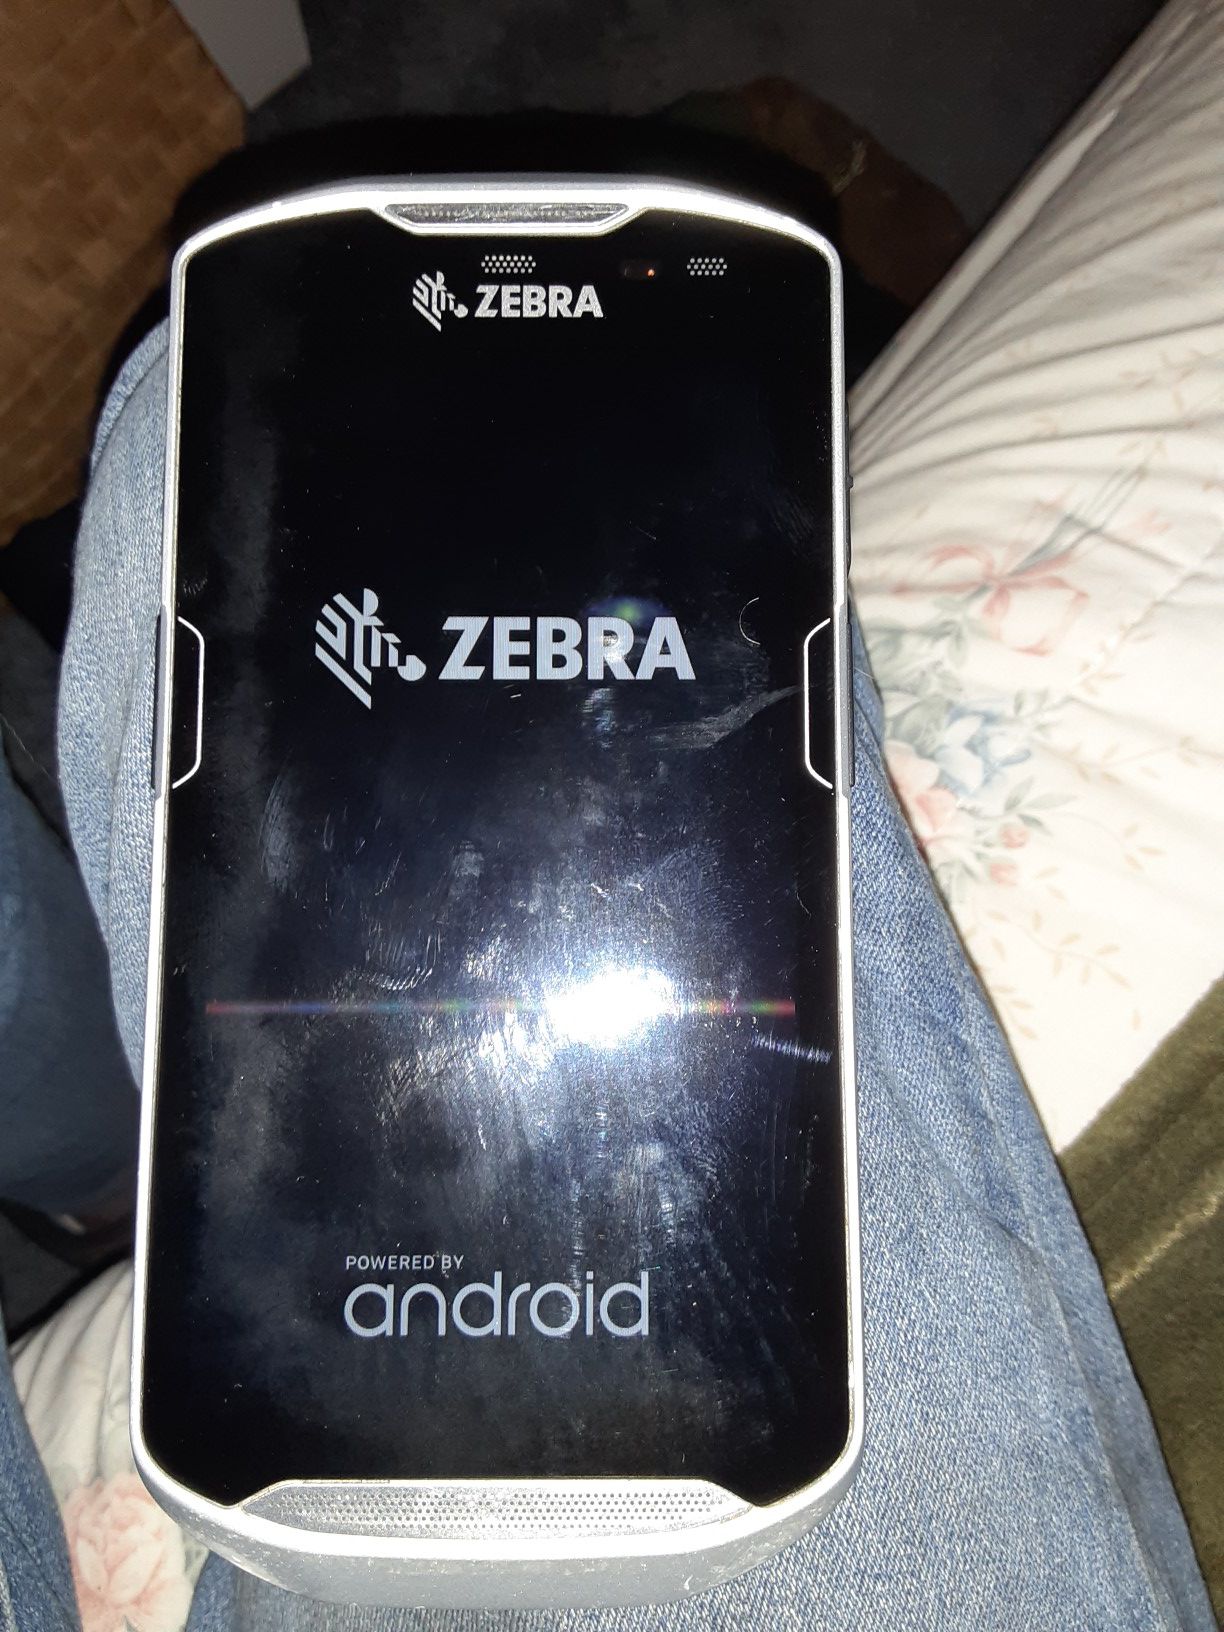 Zebra scan phone model-510k